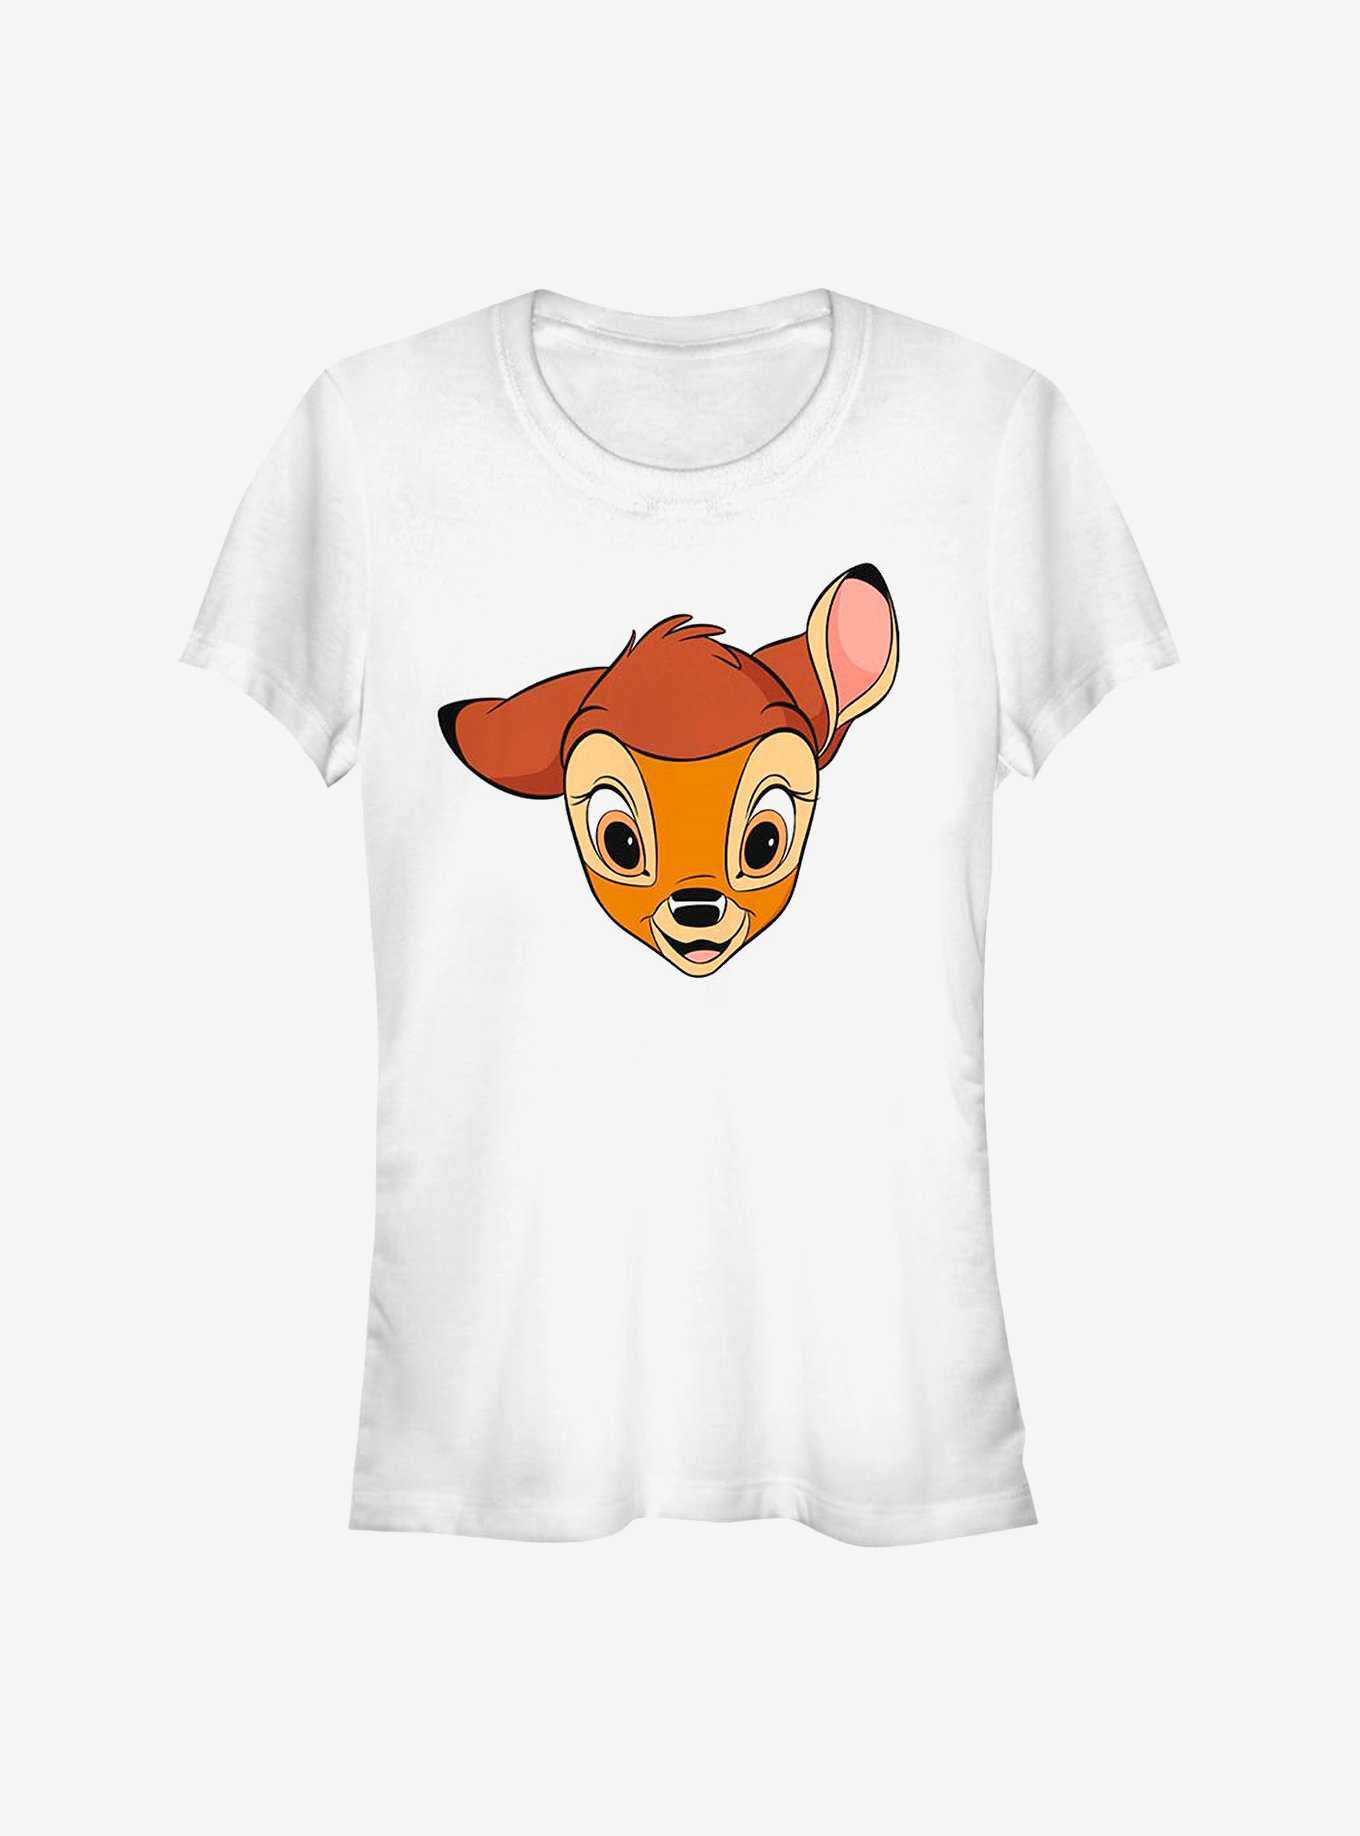 Disney Bambi Big Face Girls T-Shirt, , hi-res